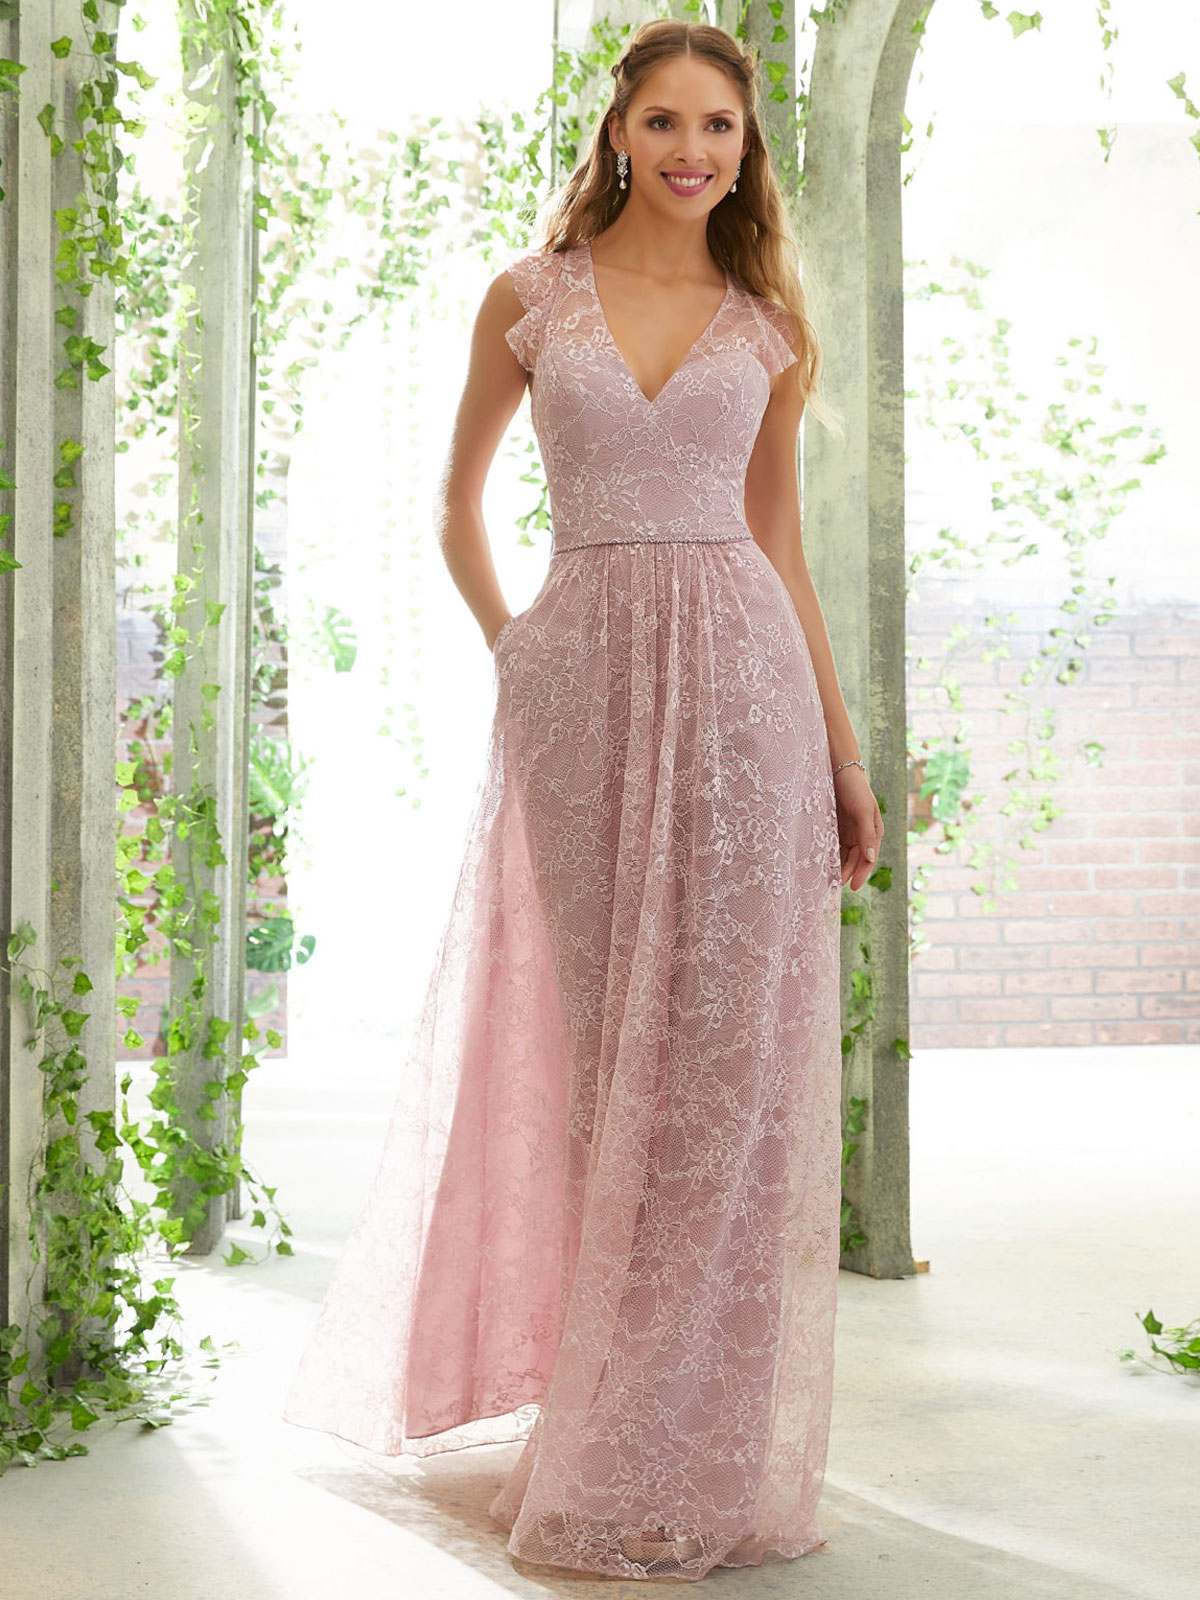 Mariage Robes de soirée pour mariage | Robe de demoiselle d'honneur rose A-ligne longueur plancher sans manches en dentelle robe de bal - YF58013